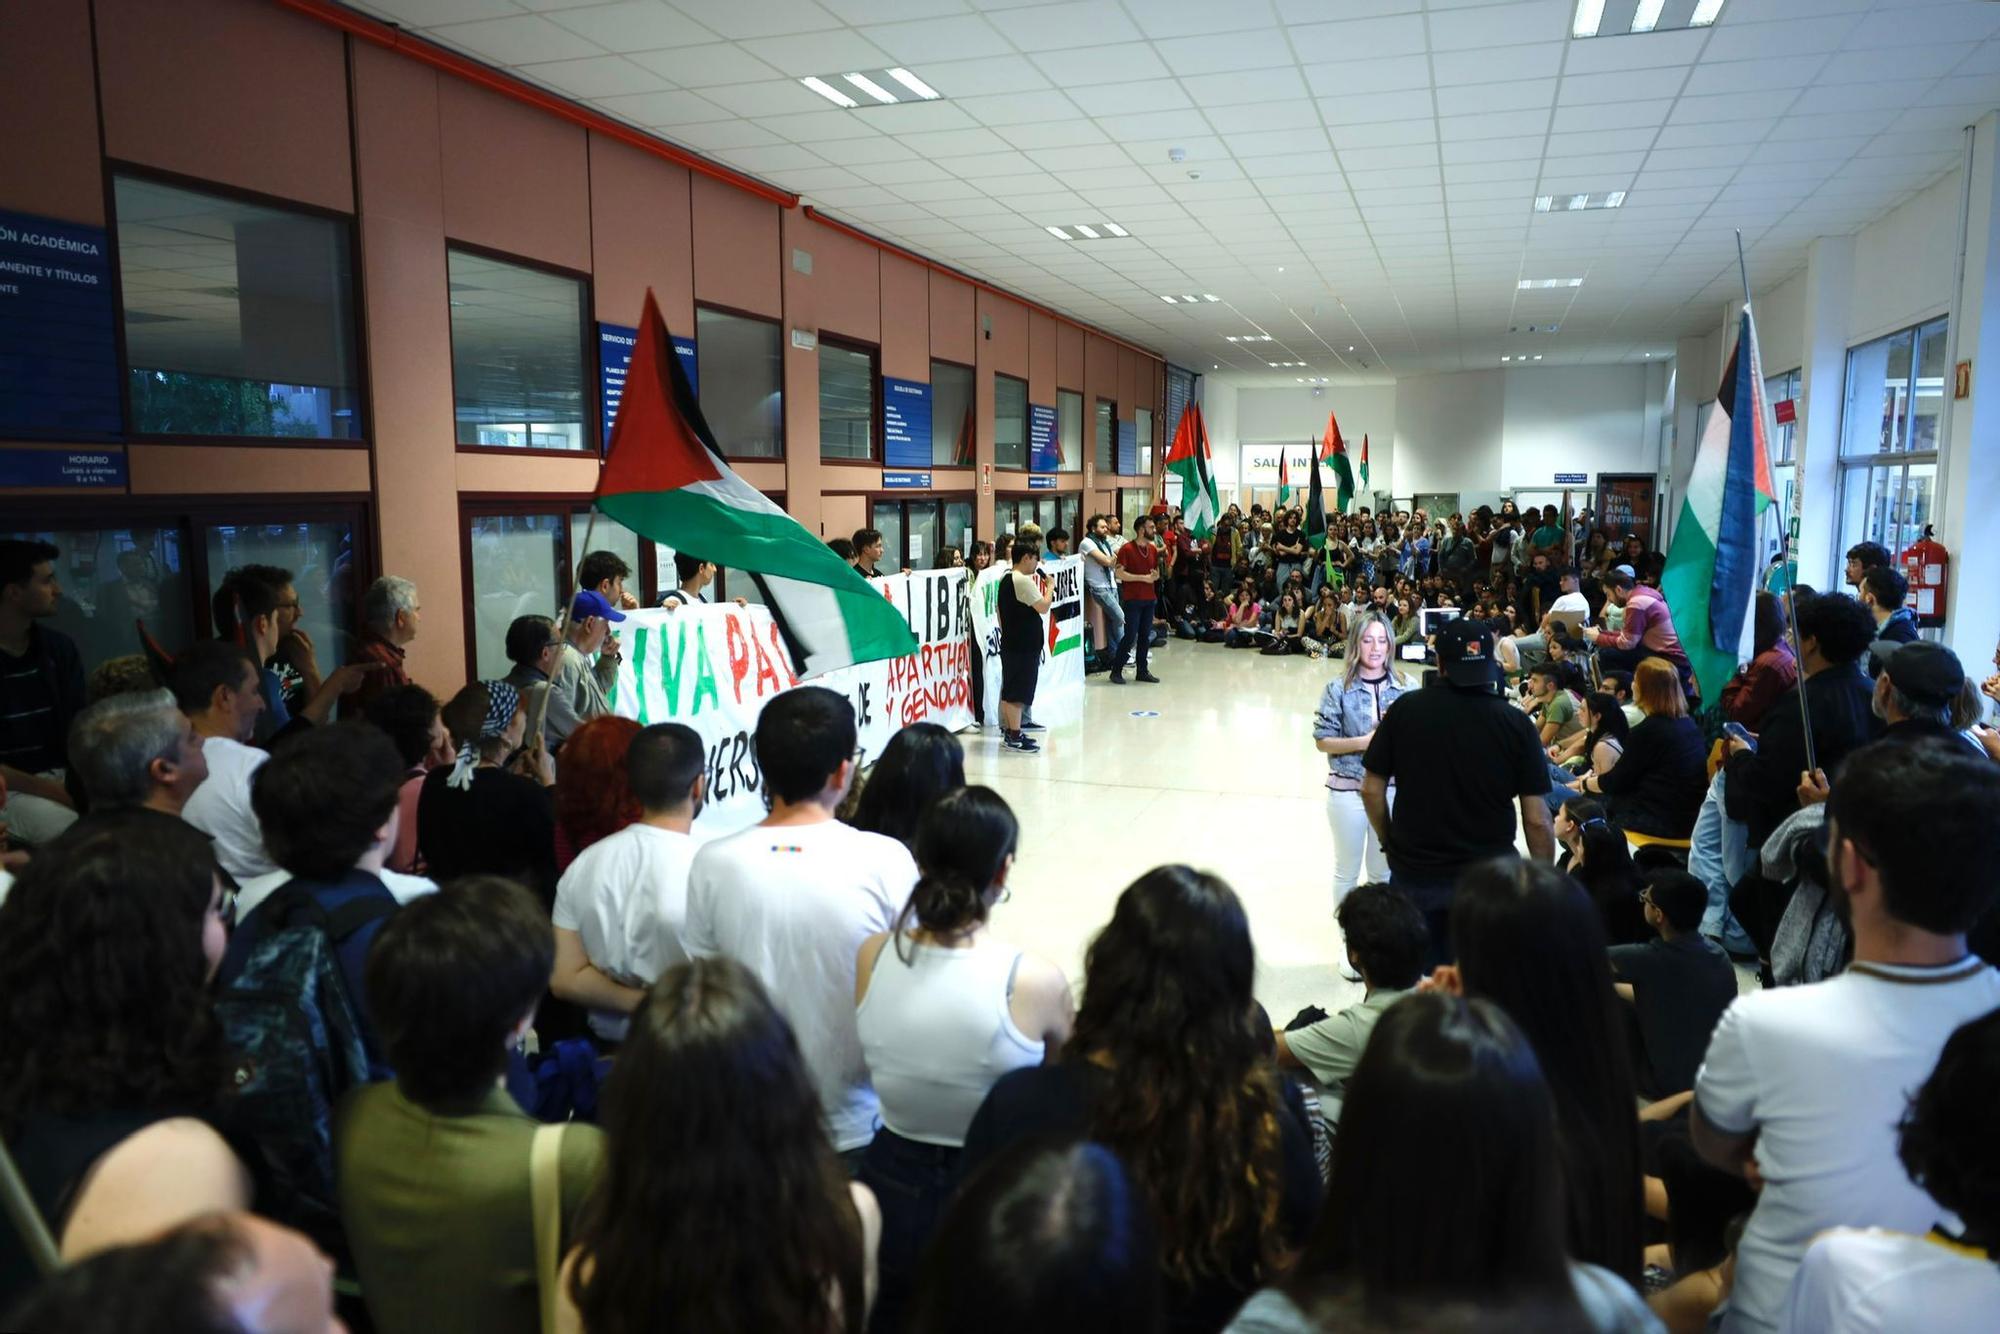 En imágenes | Decenas de estudiantes se encierran “de manera indefinida” en Interfacultades en apoyo a Palestina